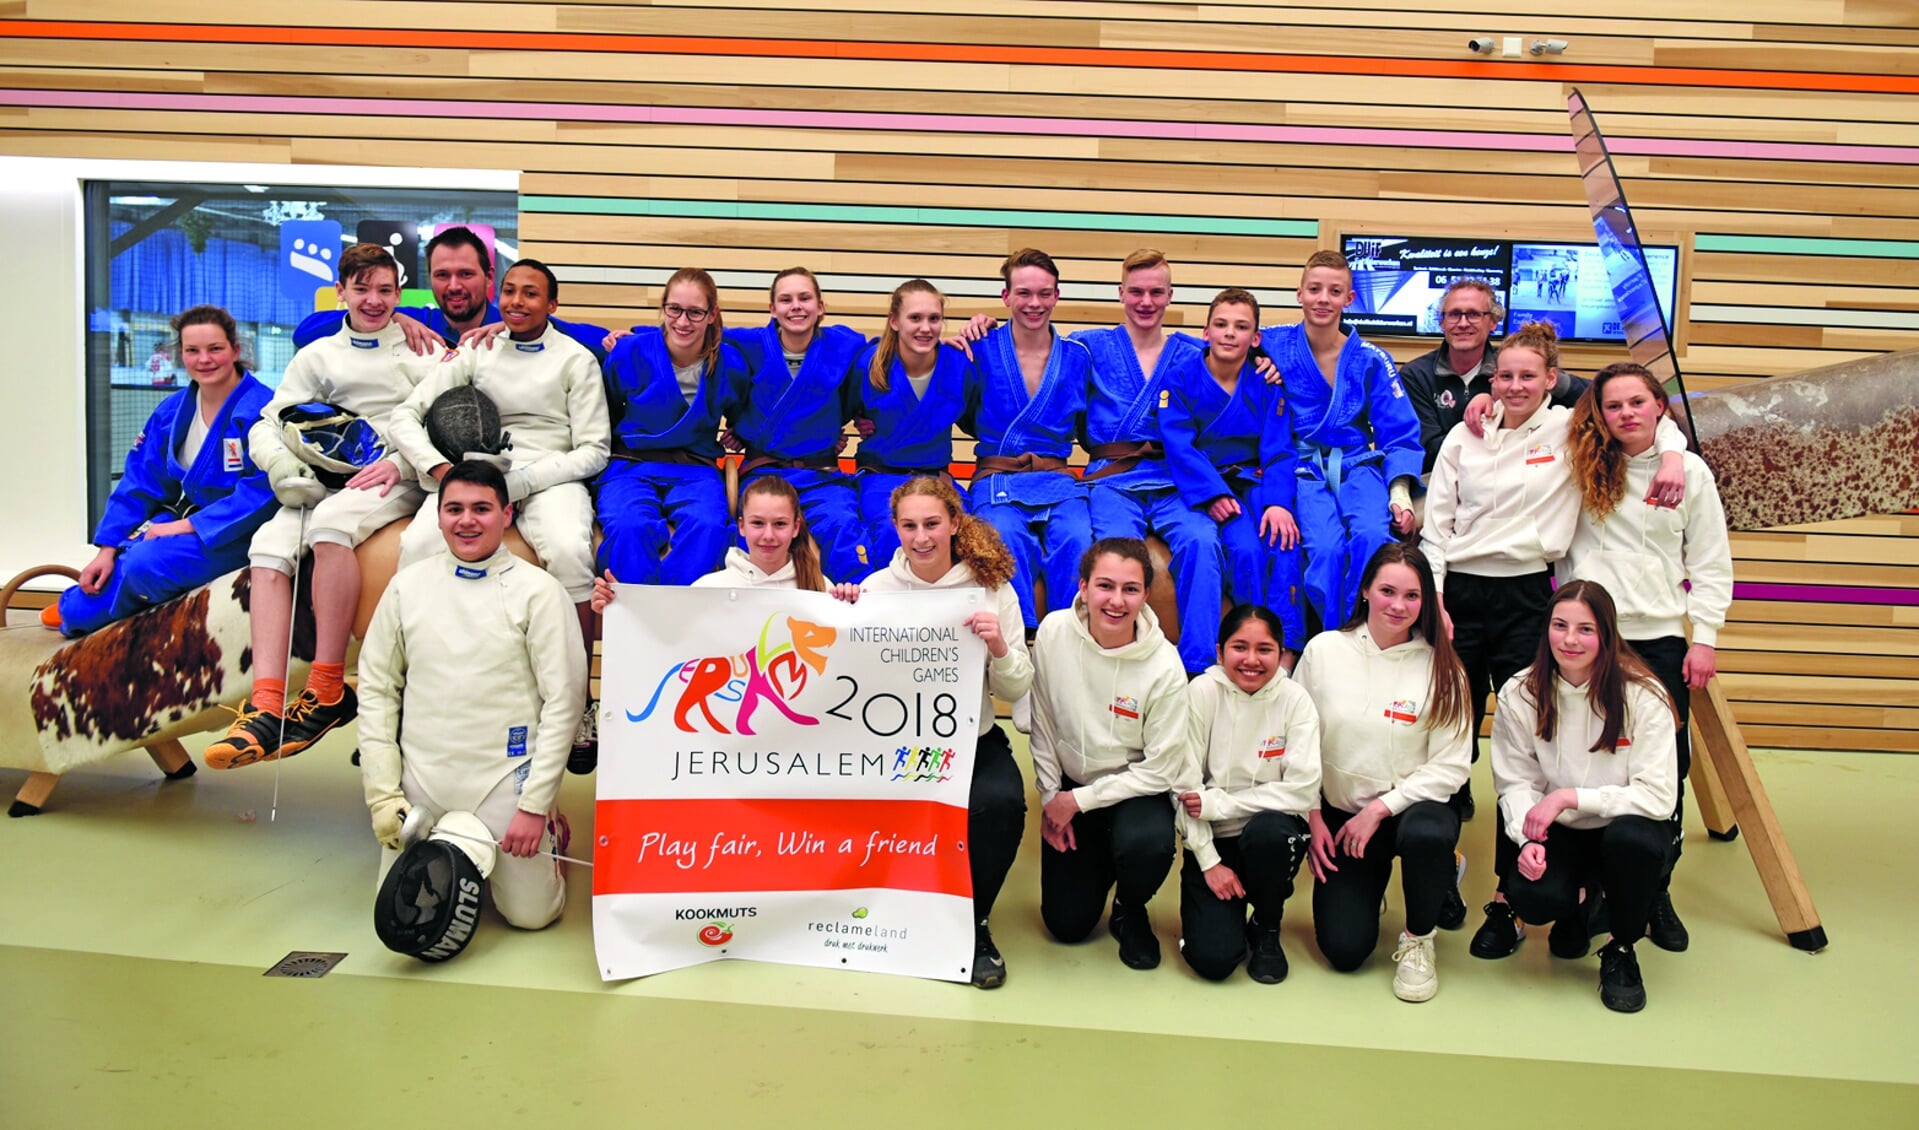 Een Alkmaarse delegatie van zeven judoka’s, acht voetbalsters en drie schermers reist op 27 juli af naar Israël voor de International Children’s Games (ICG) (Foto: aangeleverd)